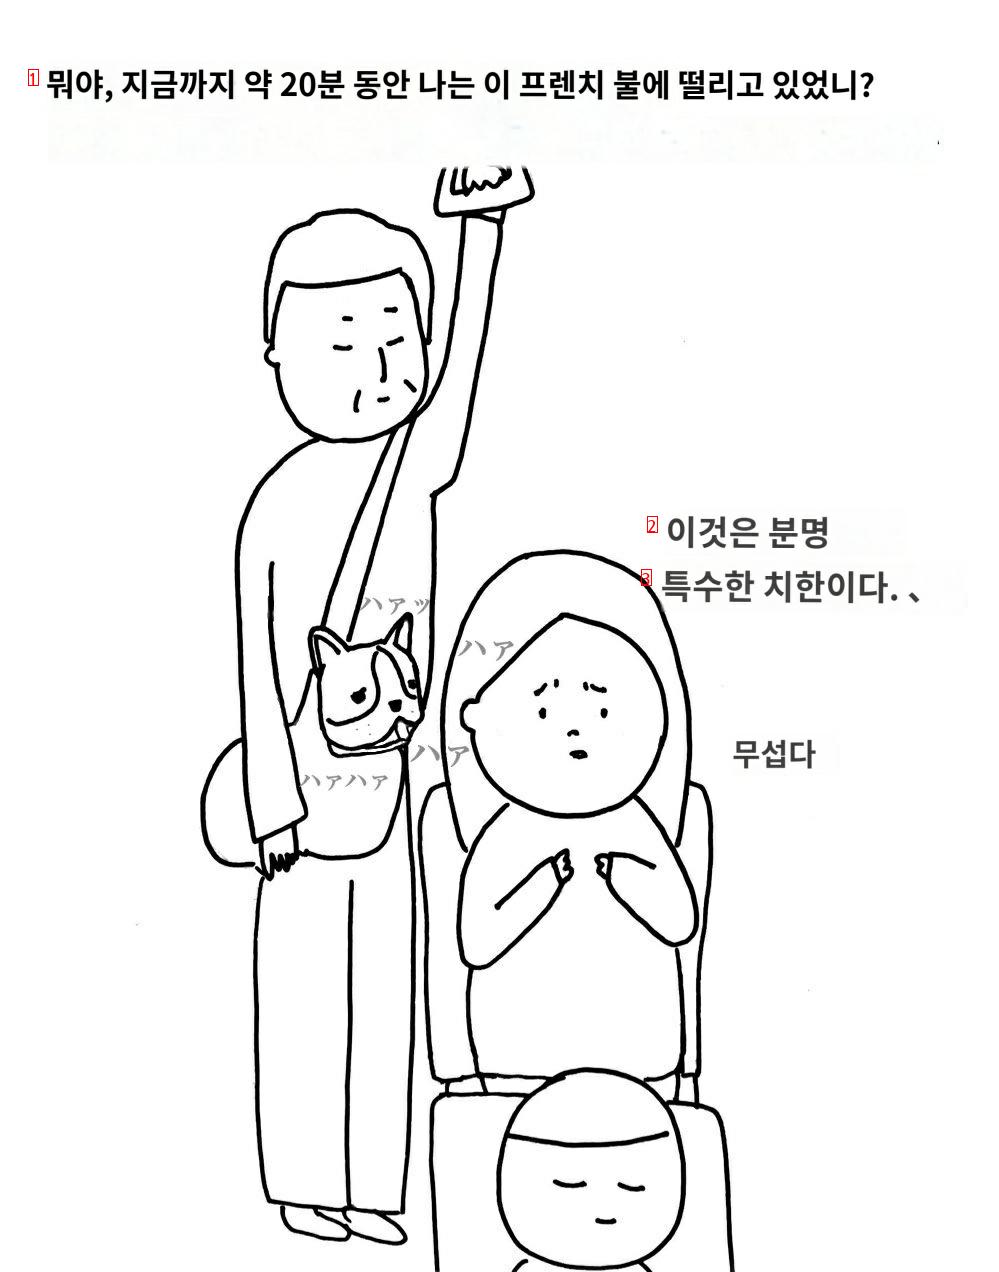 한국에서 버스탔는데 치한 만났다는 일본 여자